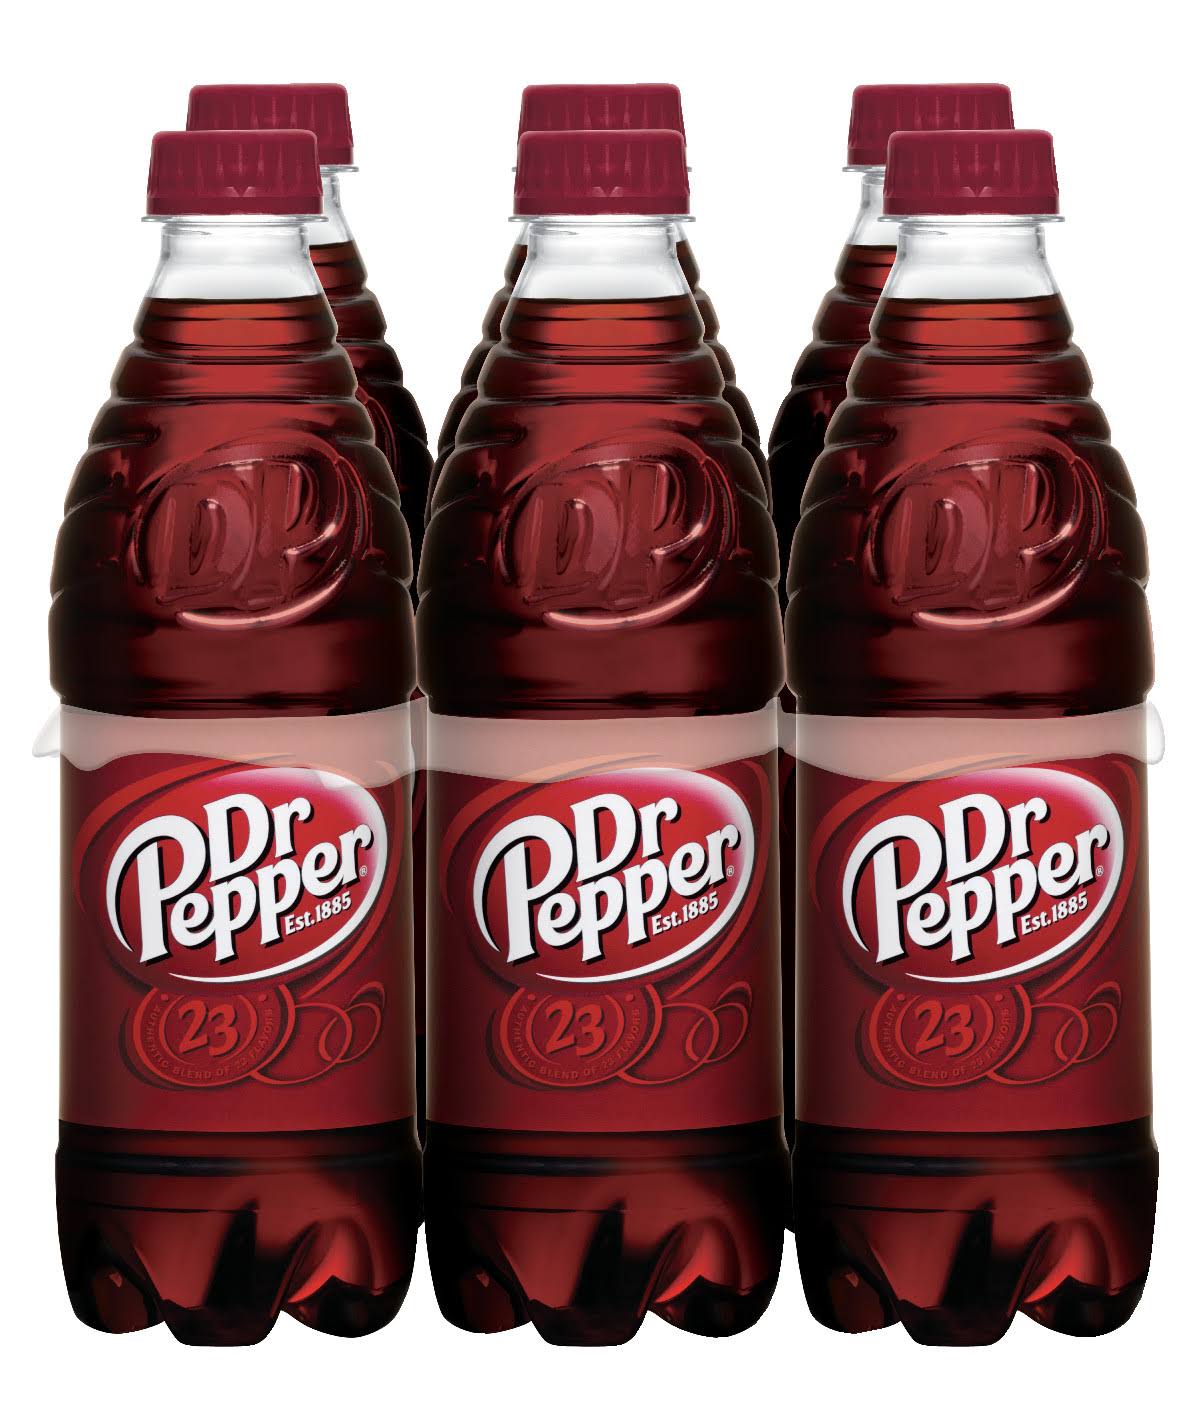 Dr Pepper Soda - 0.5L, 6ct